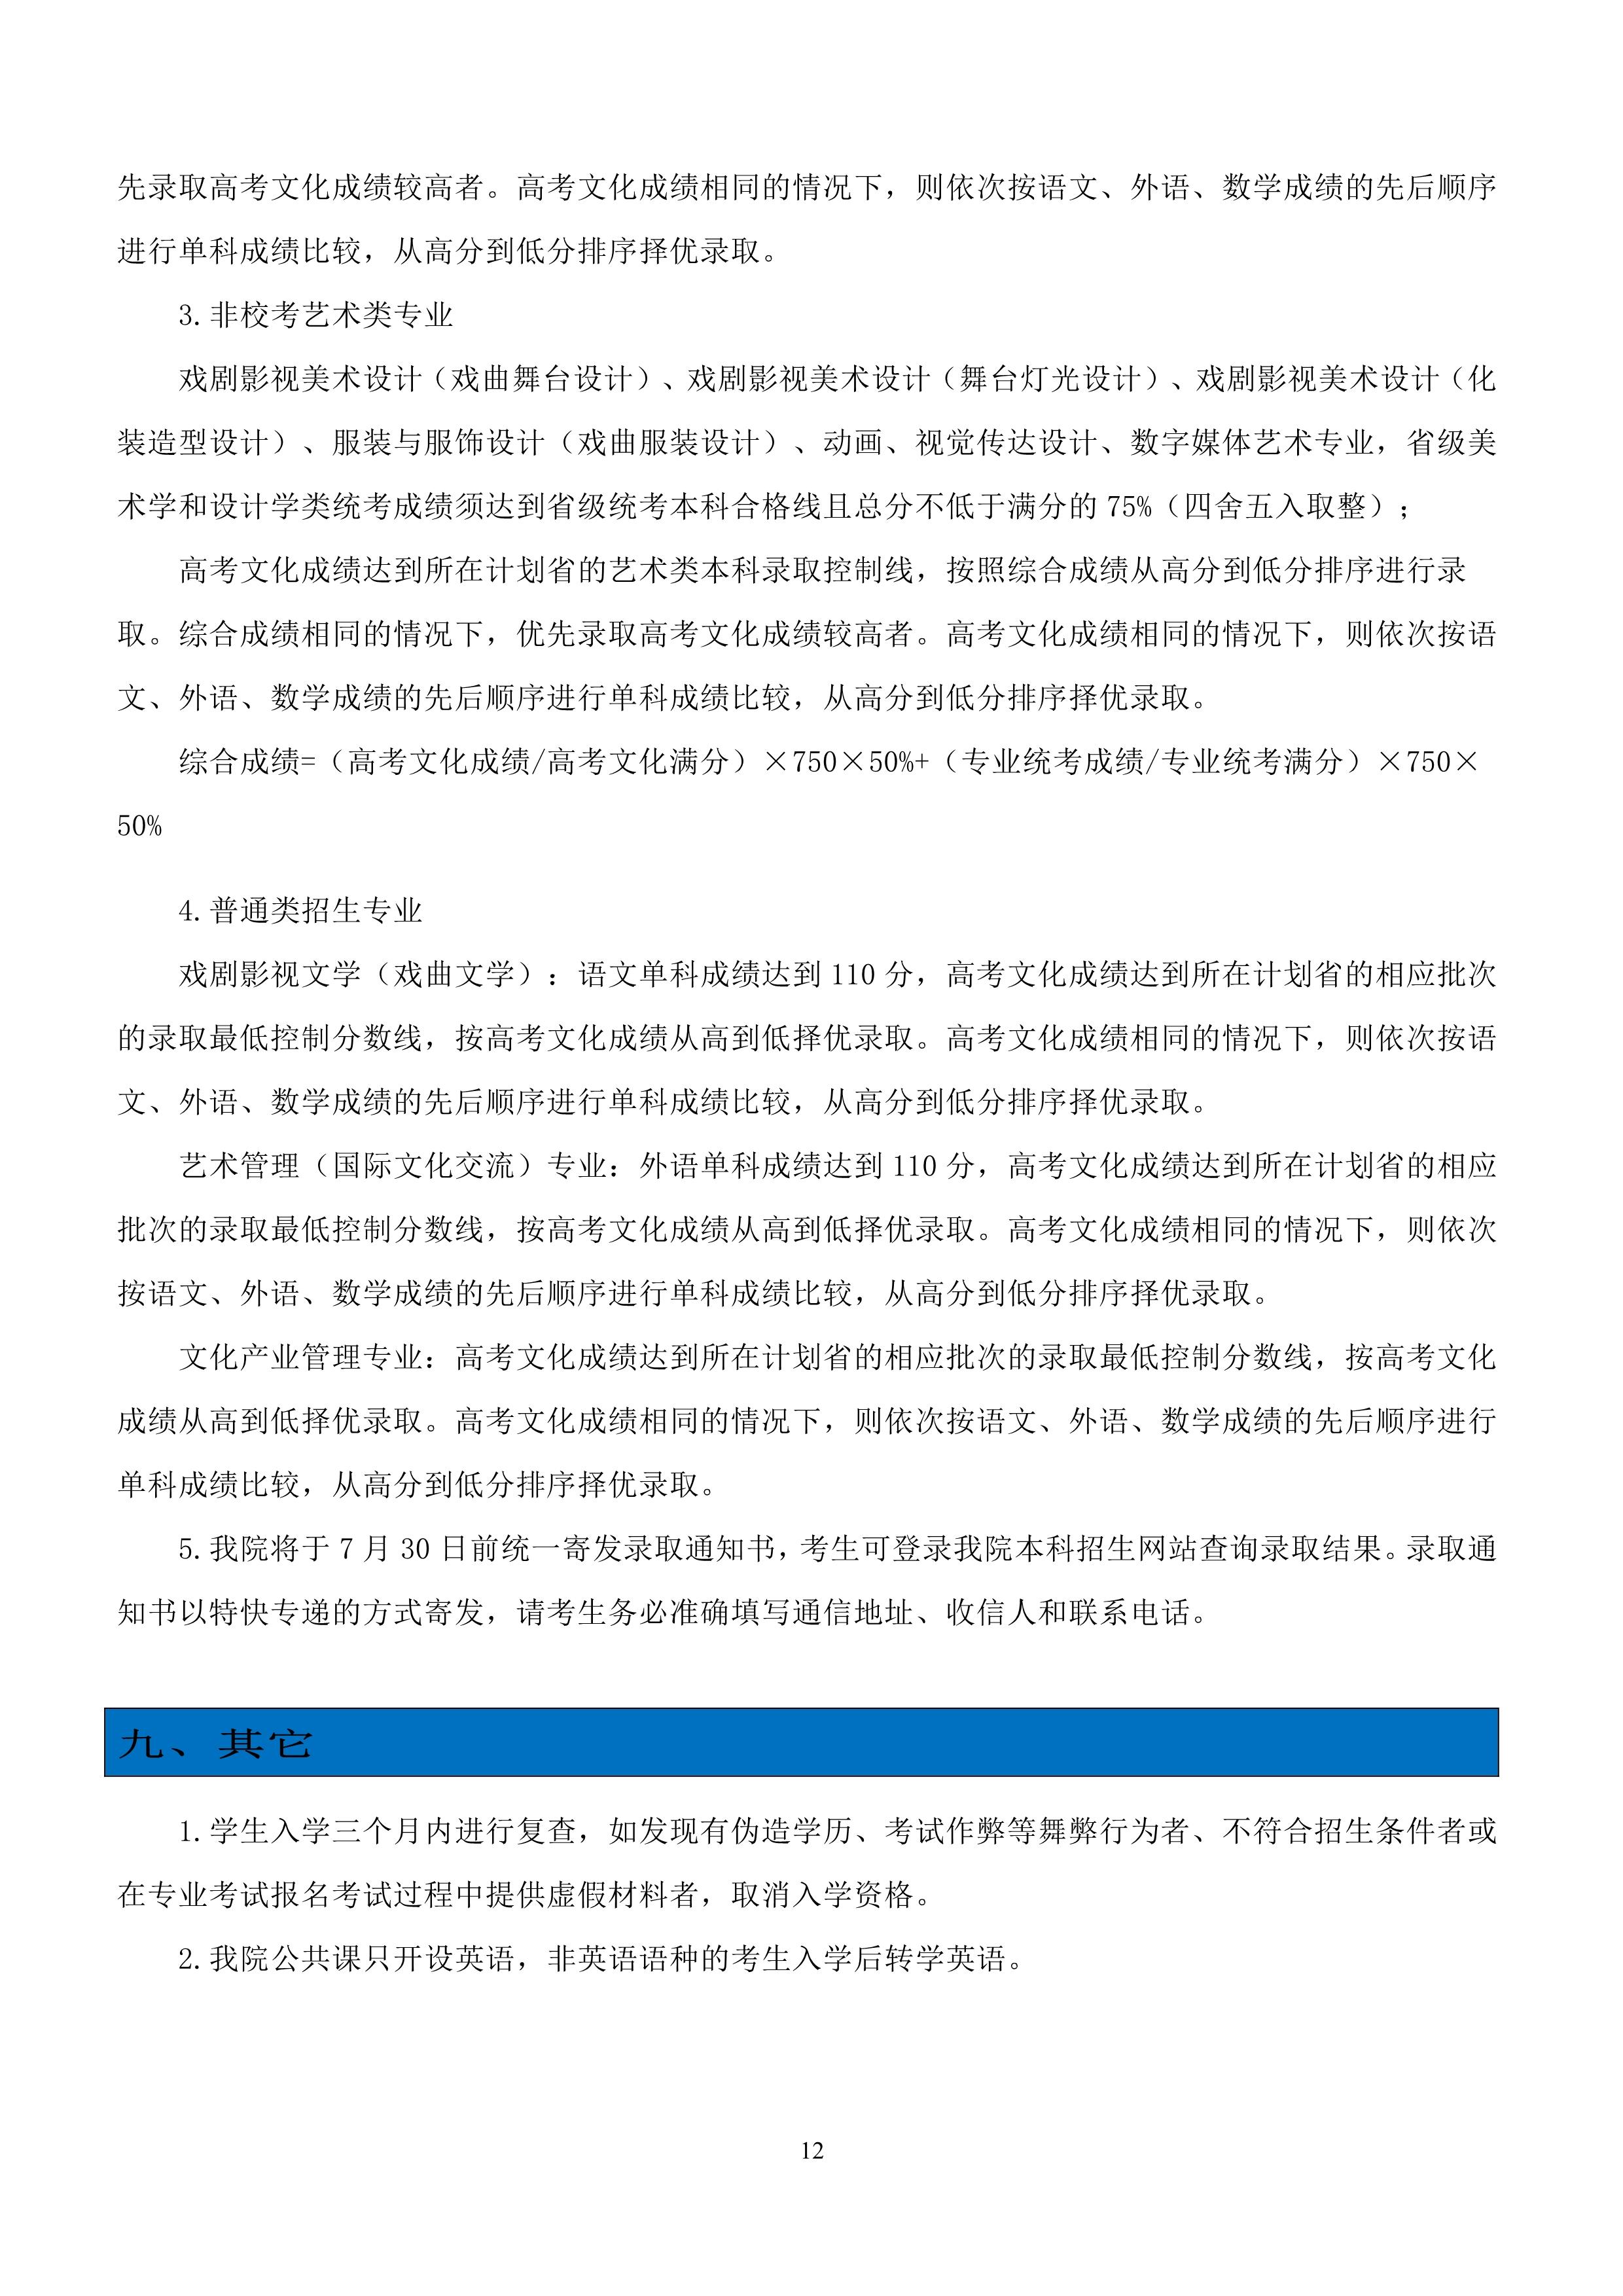 中国戏曲学院2023年本科招生简章_12.jpg